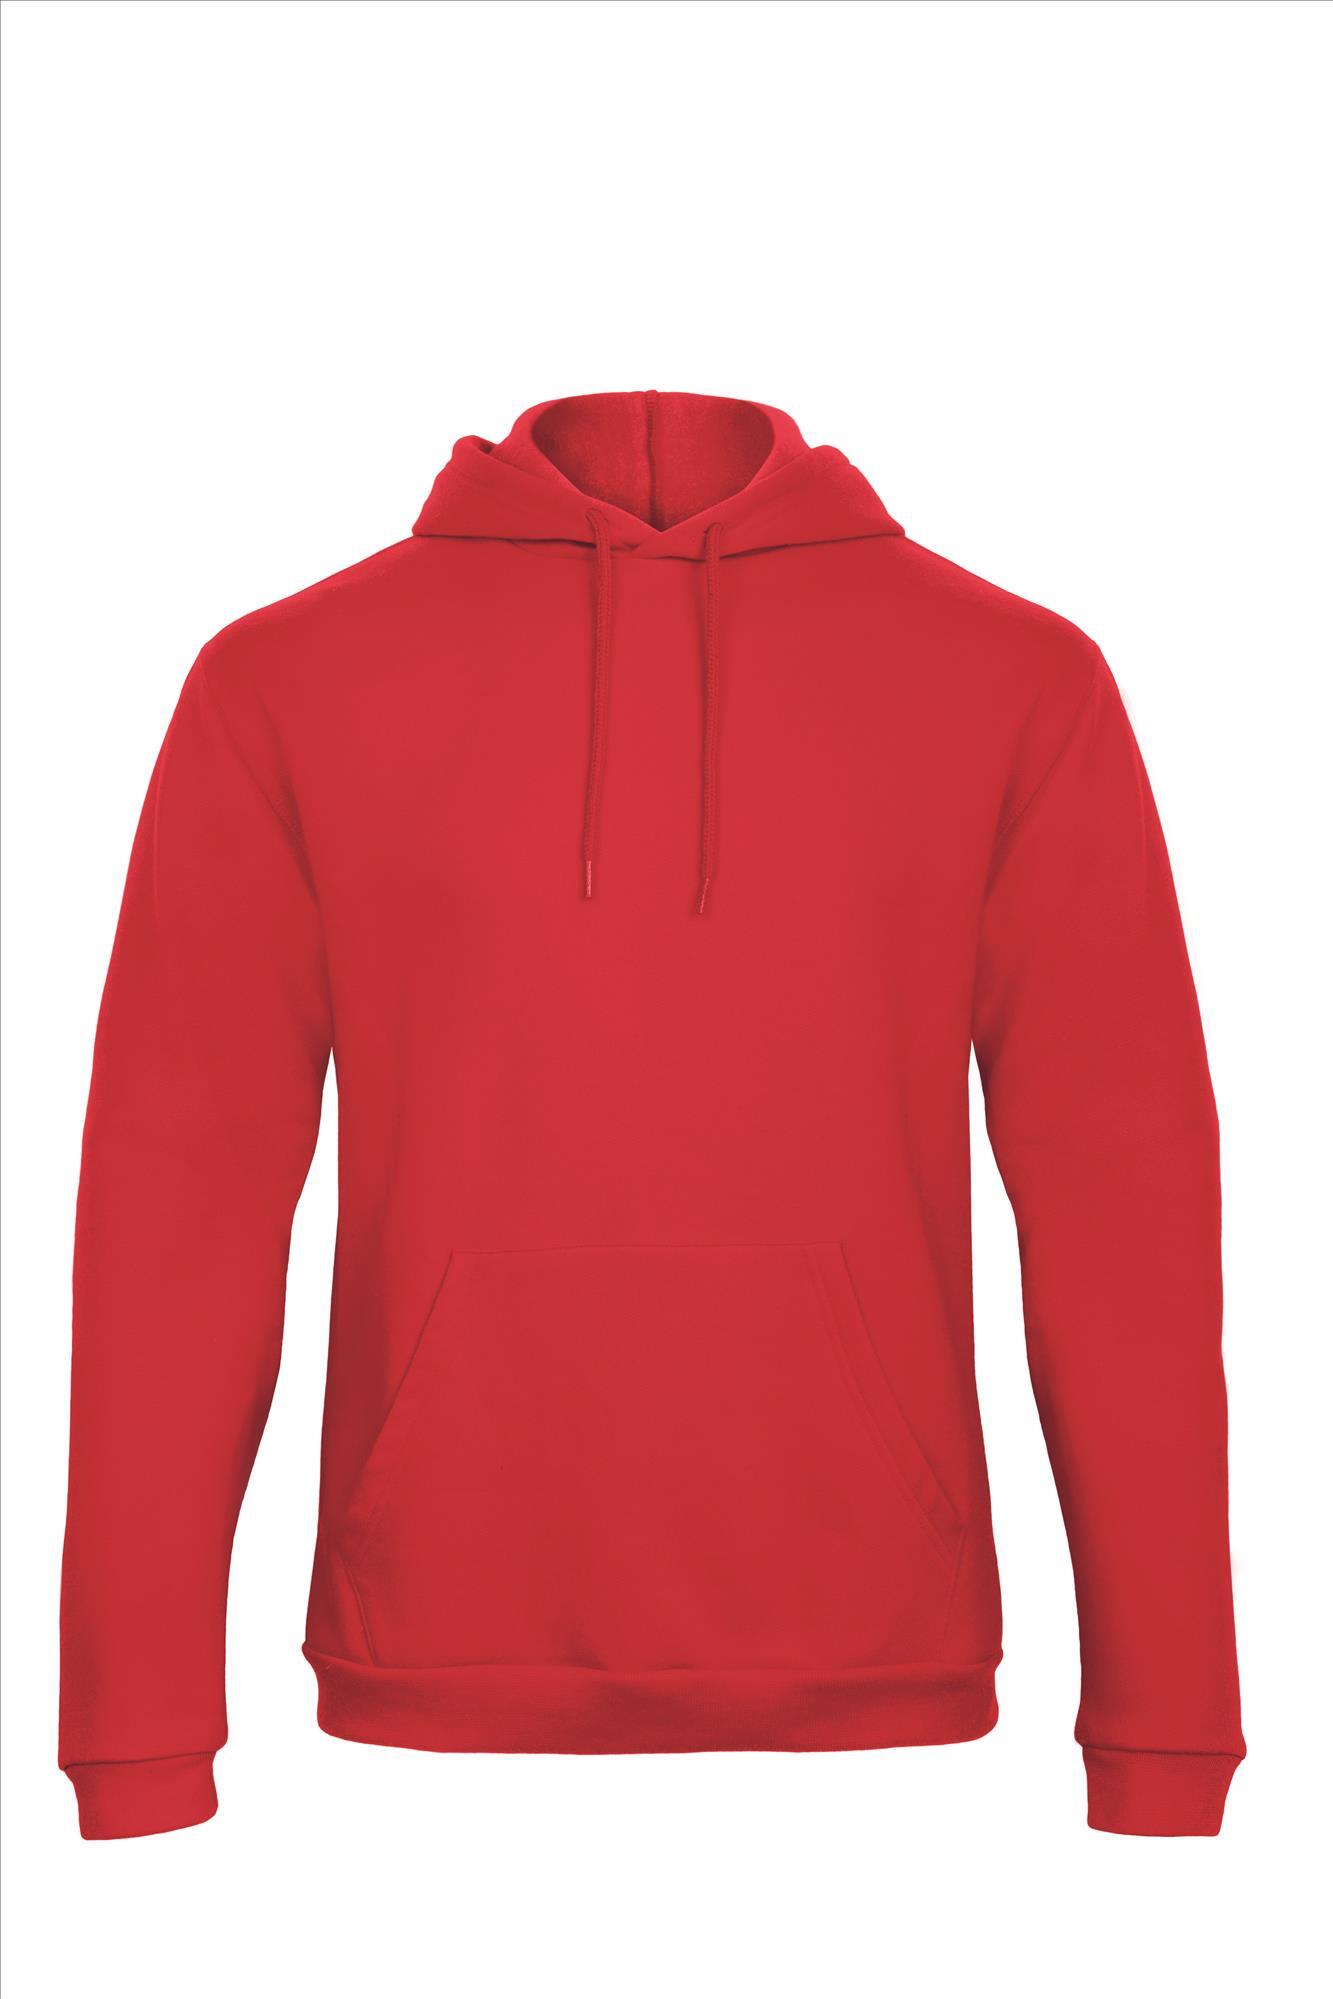 Rode hoodie Sweatshirt Unisex met capuchon heren bedrukbaar